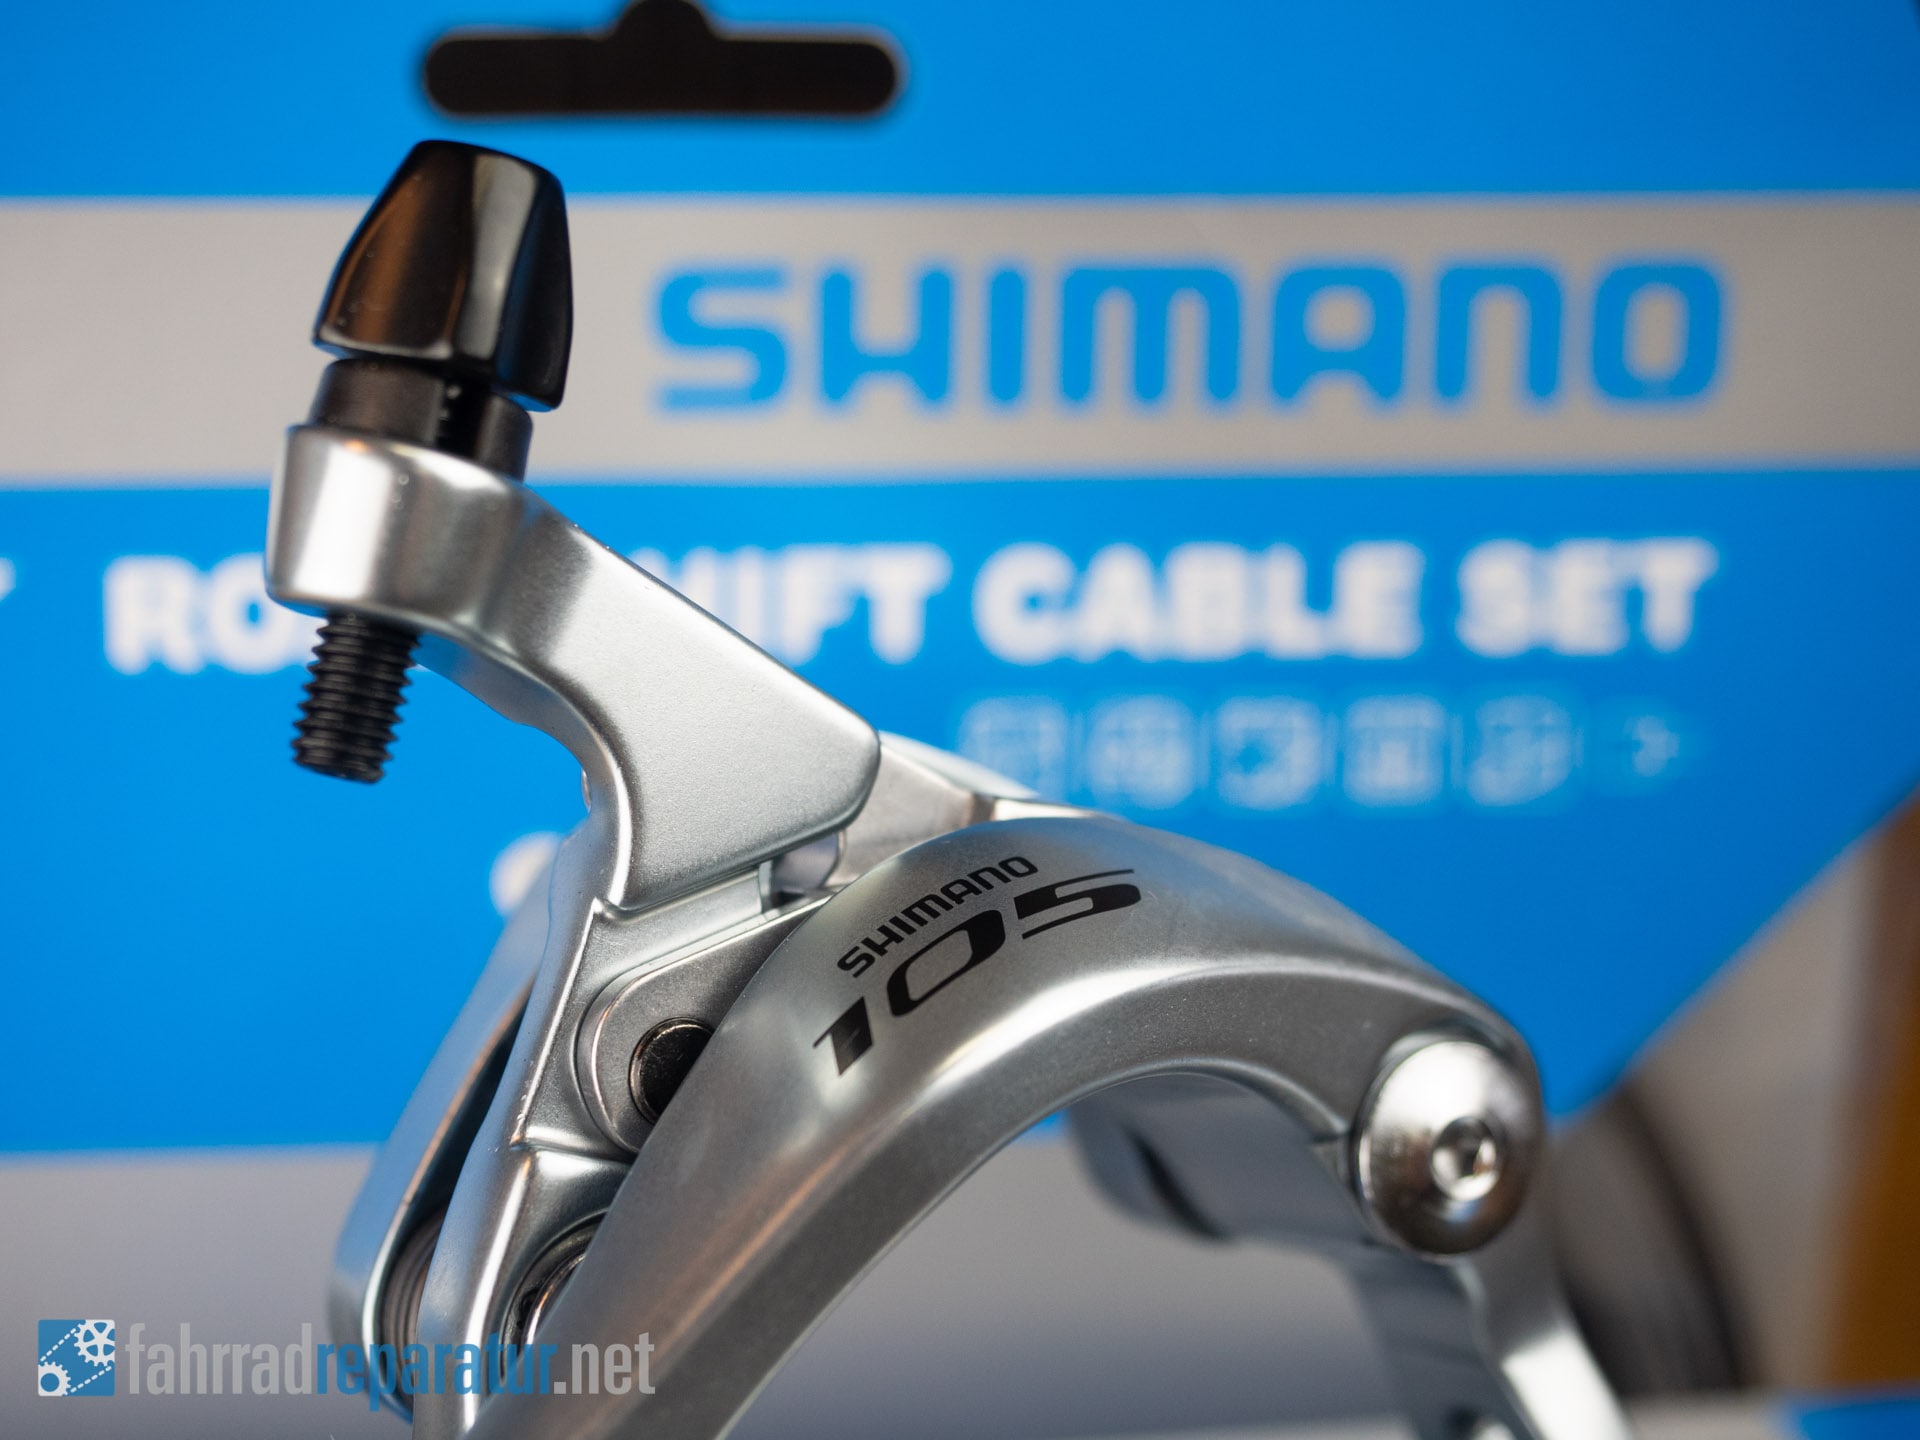 Shimano 105 Gruppe für Rennräder Übersicht, Ratgeber ⚒